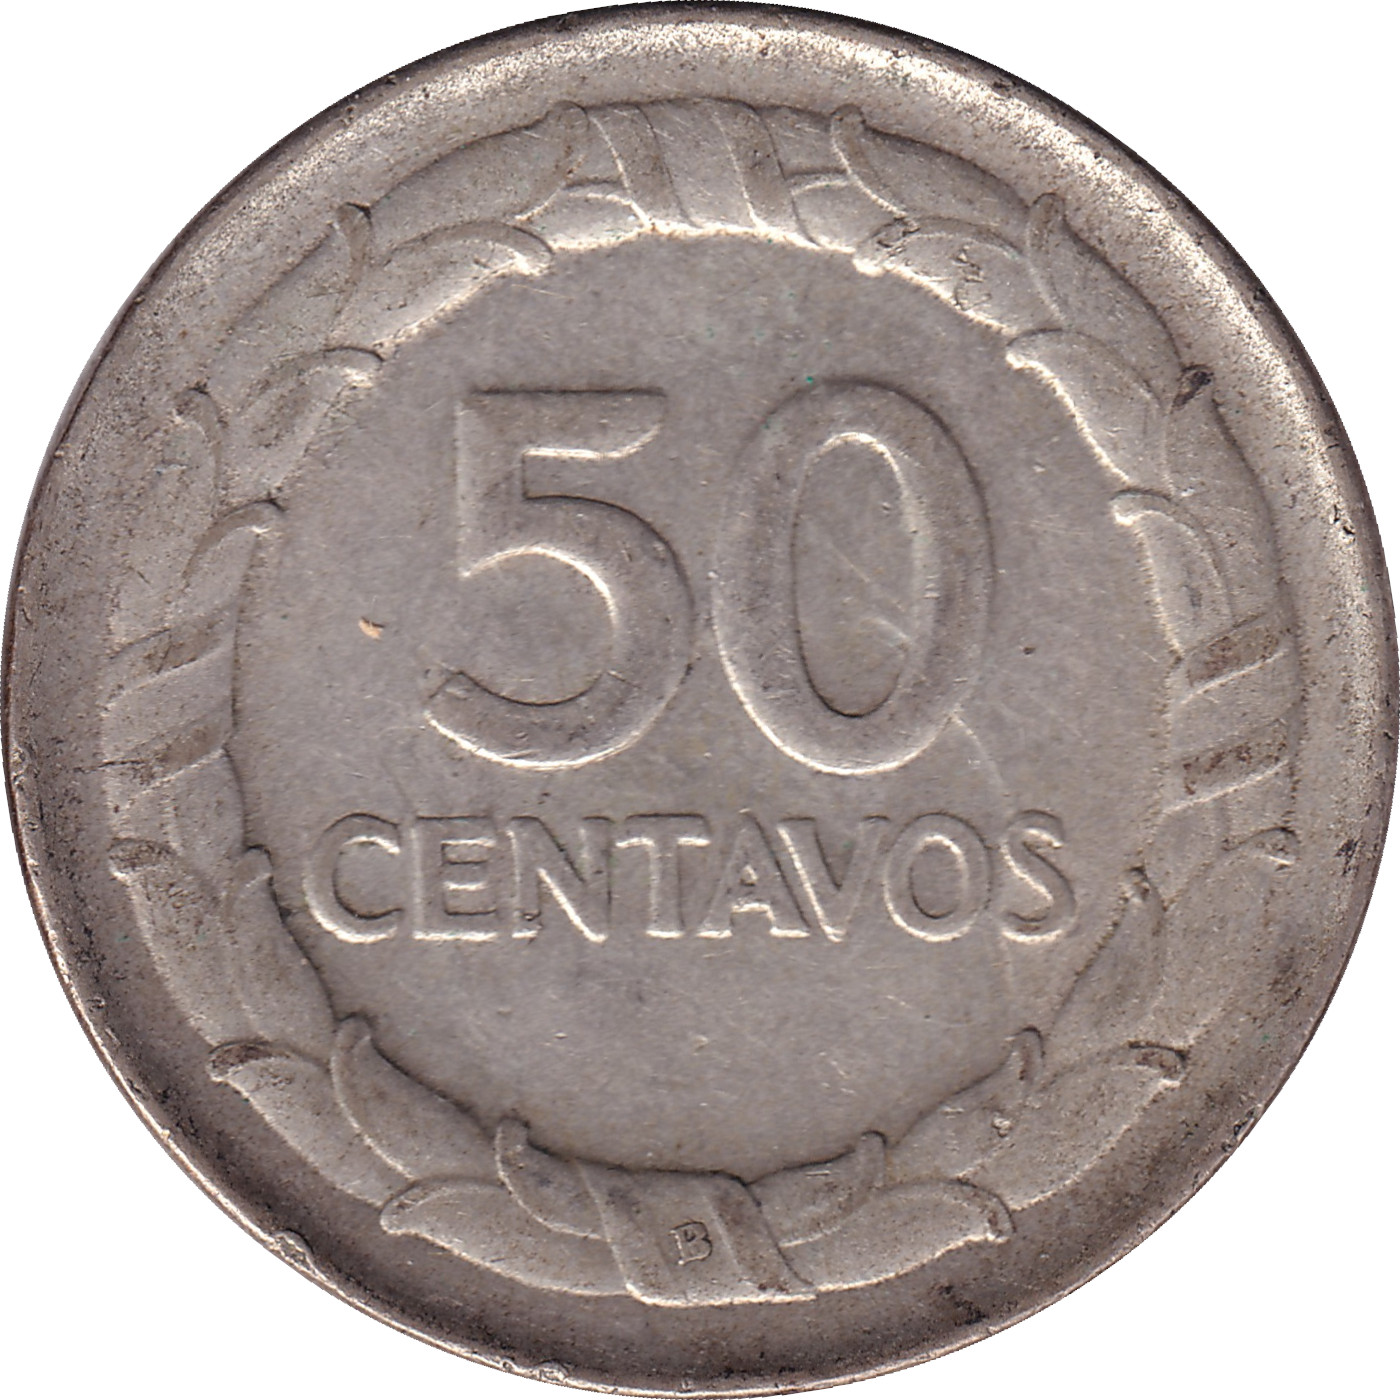 50 centavos - Santander